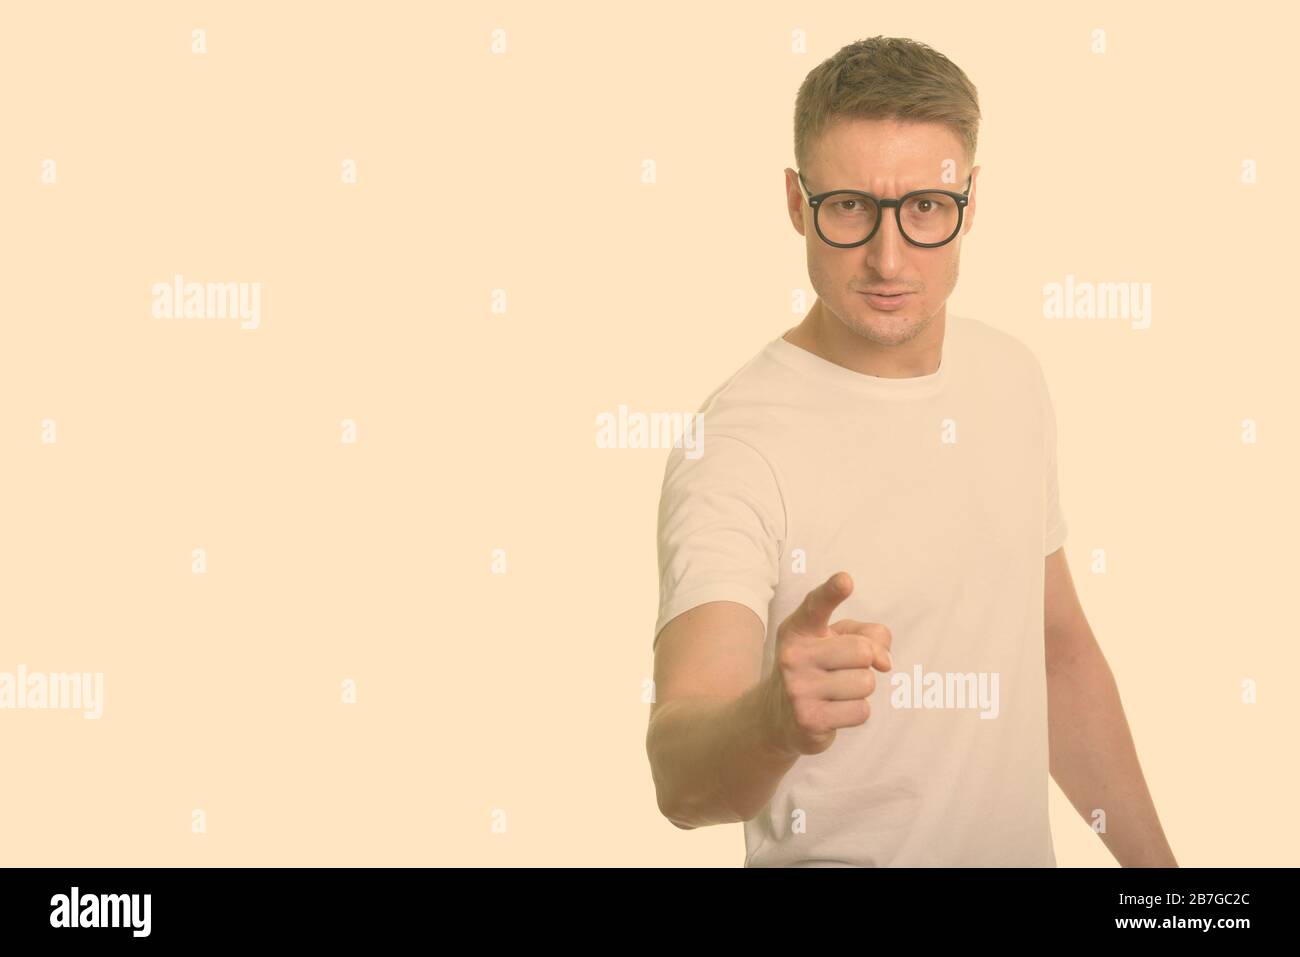 Ritratto di uomo nerd stressato con occhiali che puntano alla macchina fotografica Foto Stock